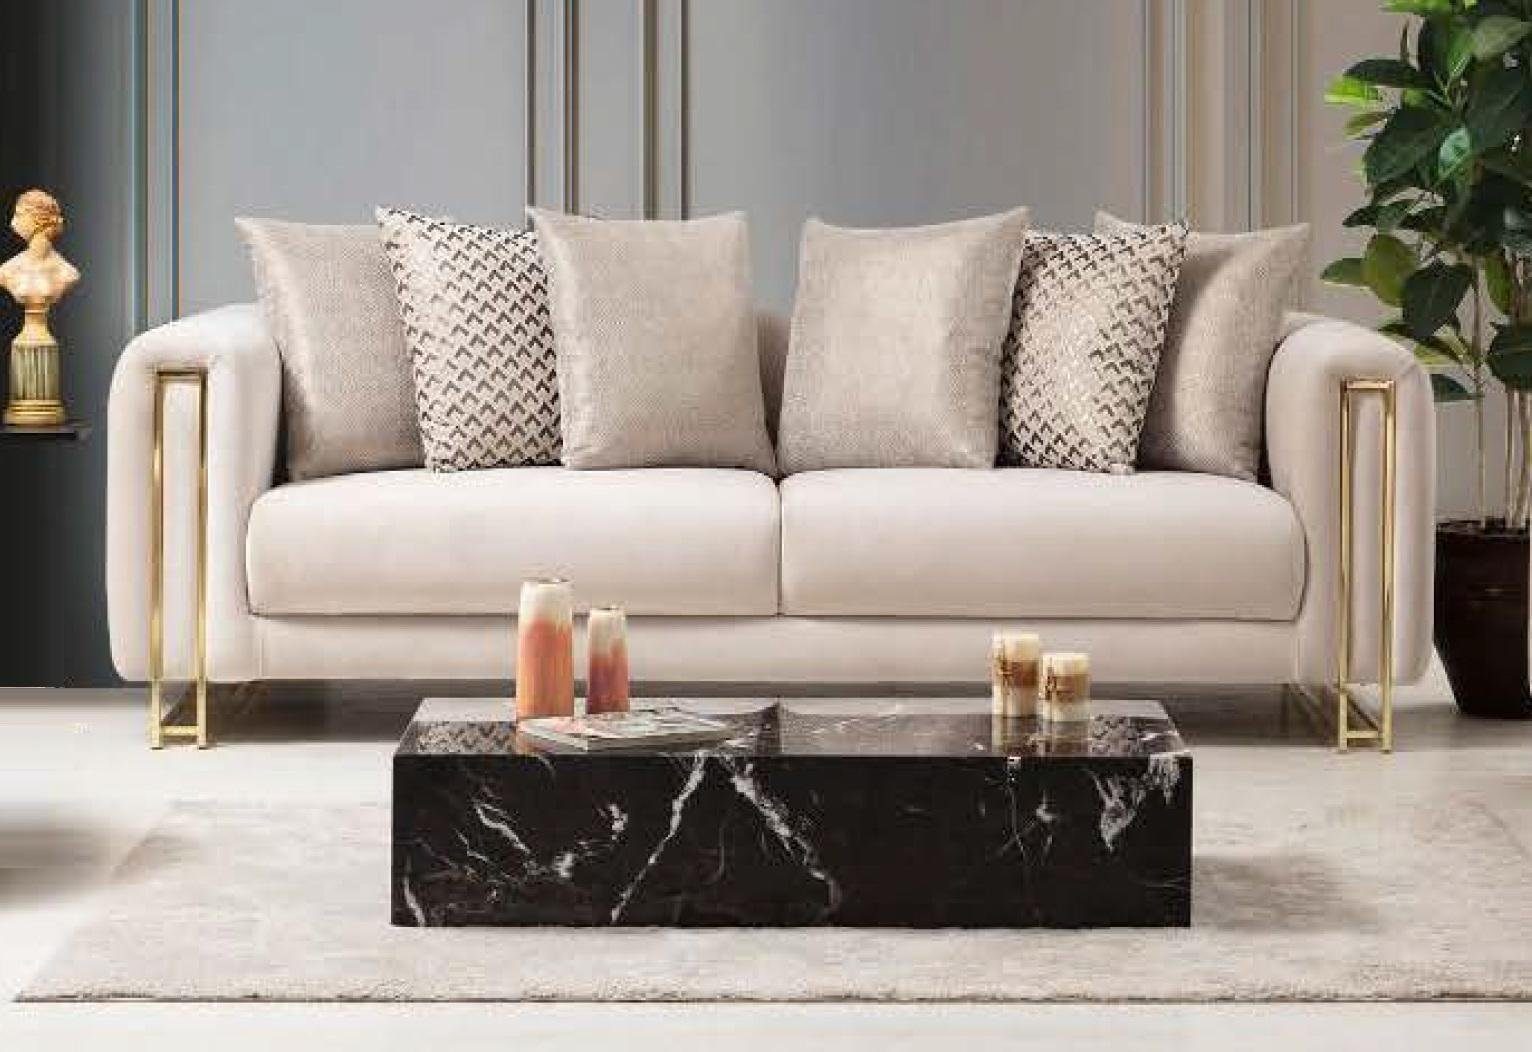 JVmoebel 3-Sitzer Design Textil 3 Sitzer Weiß Elegant Modern Sofa Couch, Made in Europe